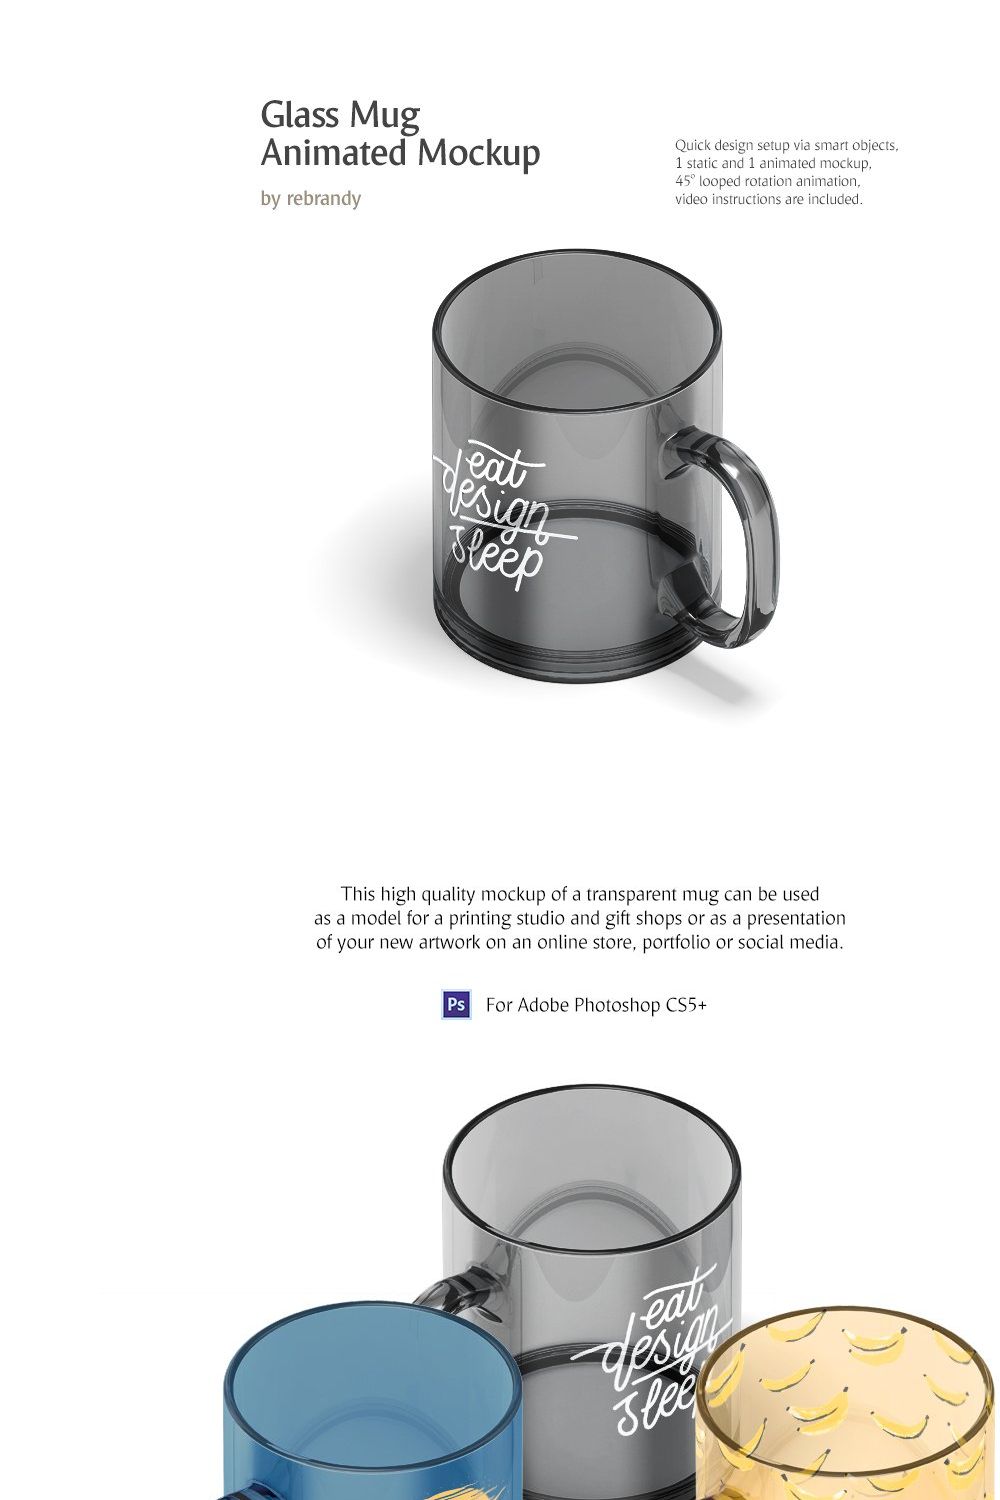 New Glass Mug Animated Mockup pinterest preview image.